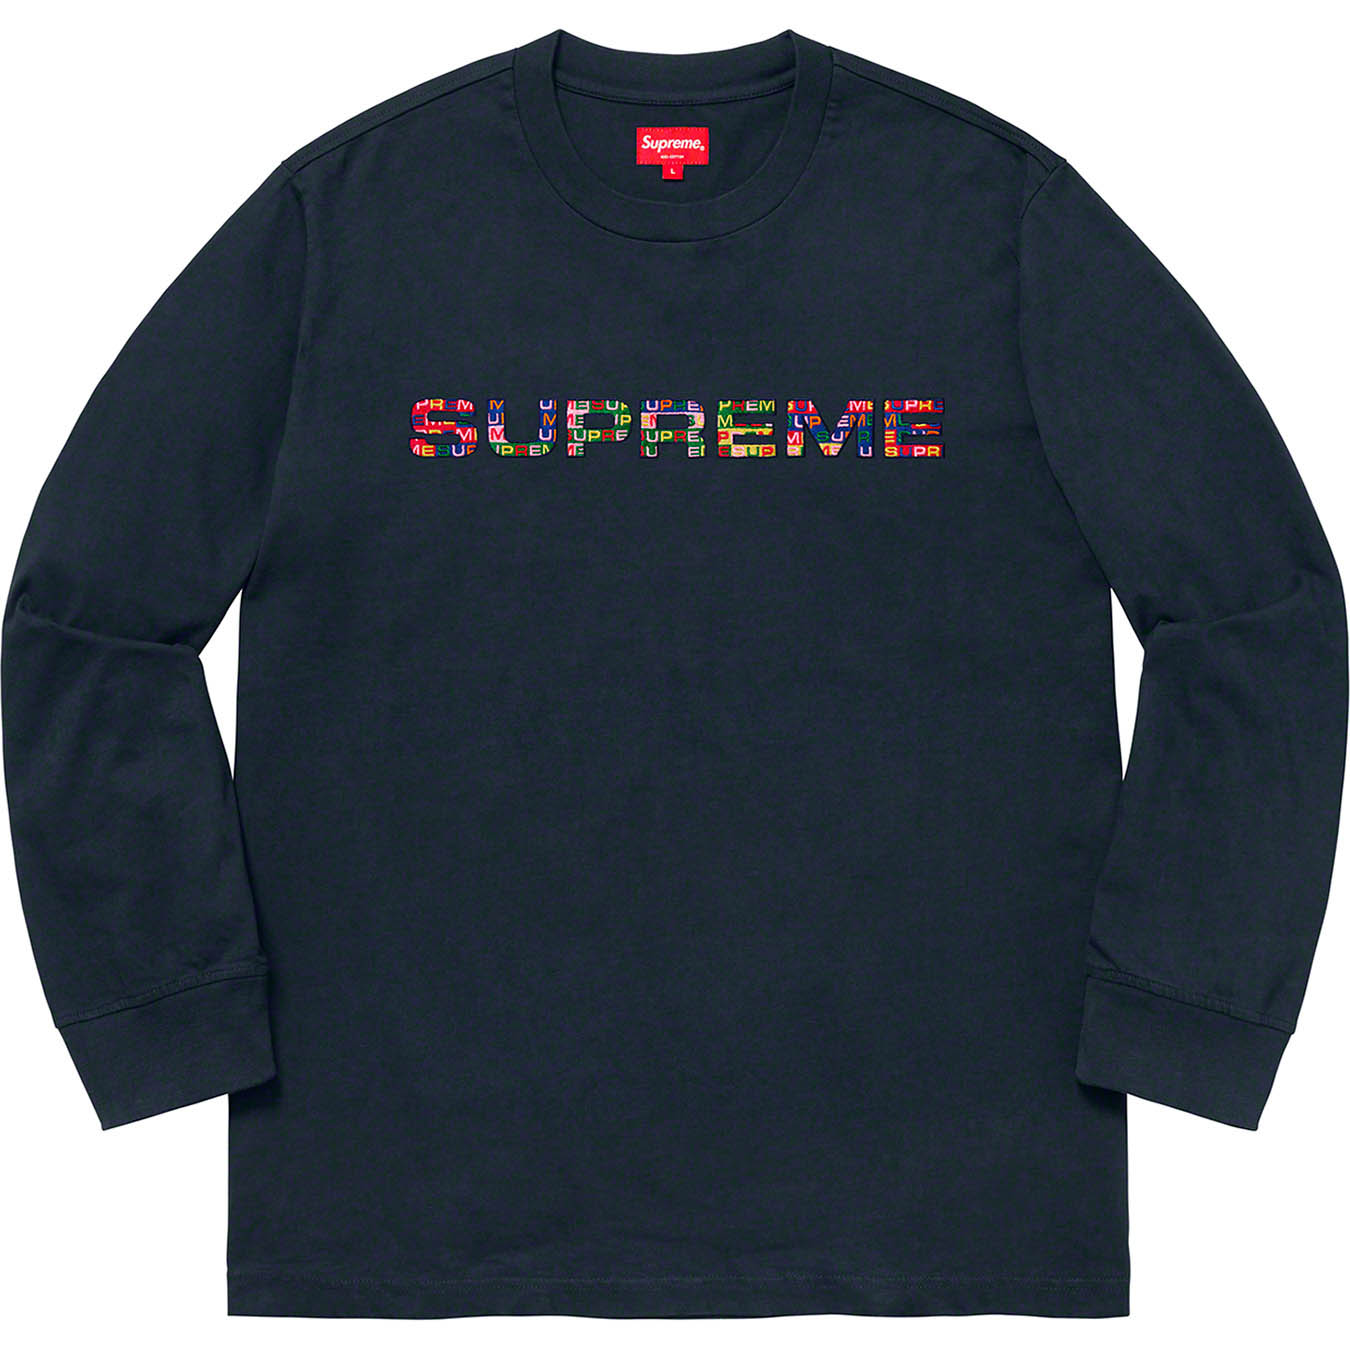 Supreme Meta Logo L/S Top